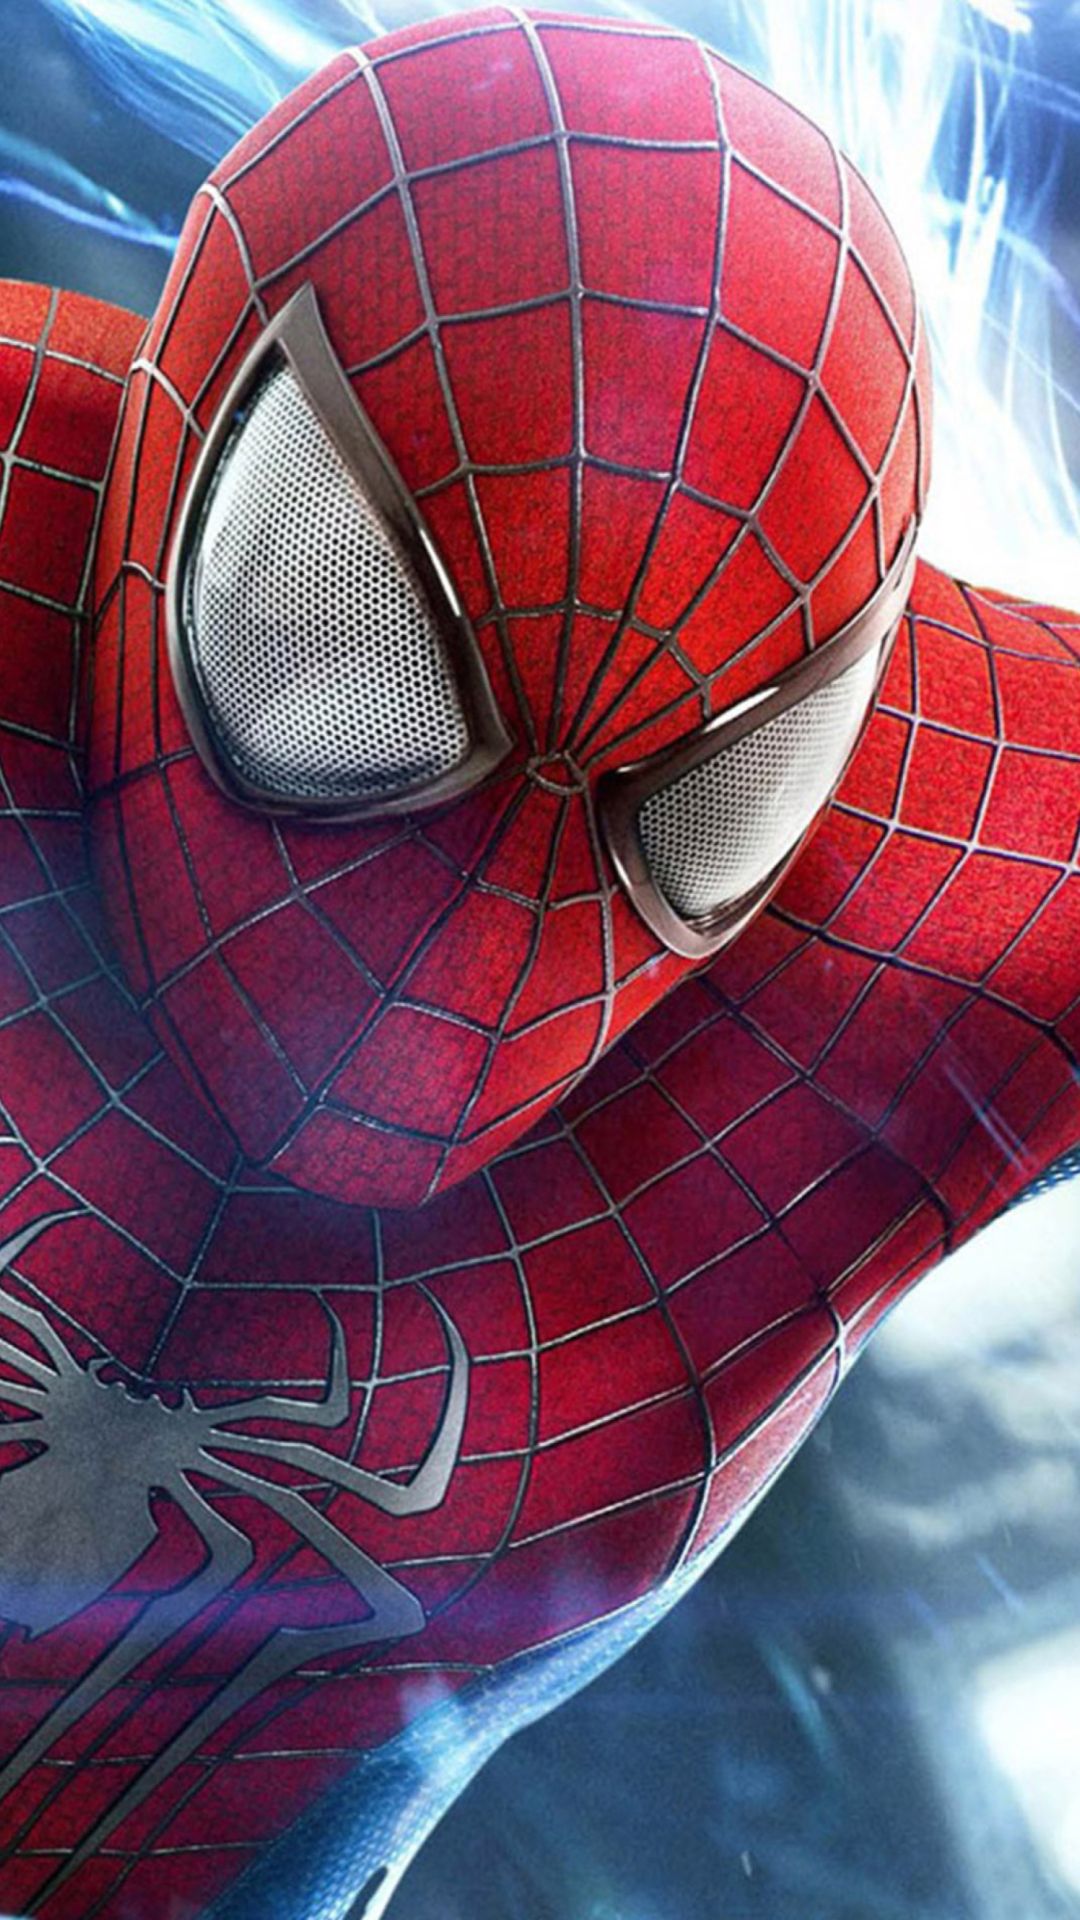 Fondos de Spiderman HD gratis para Iphone